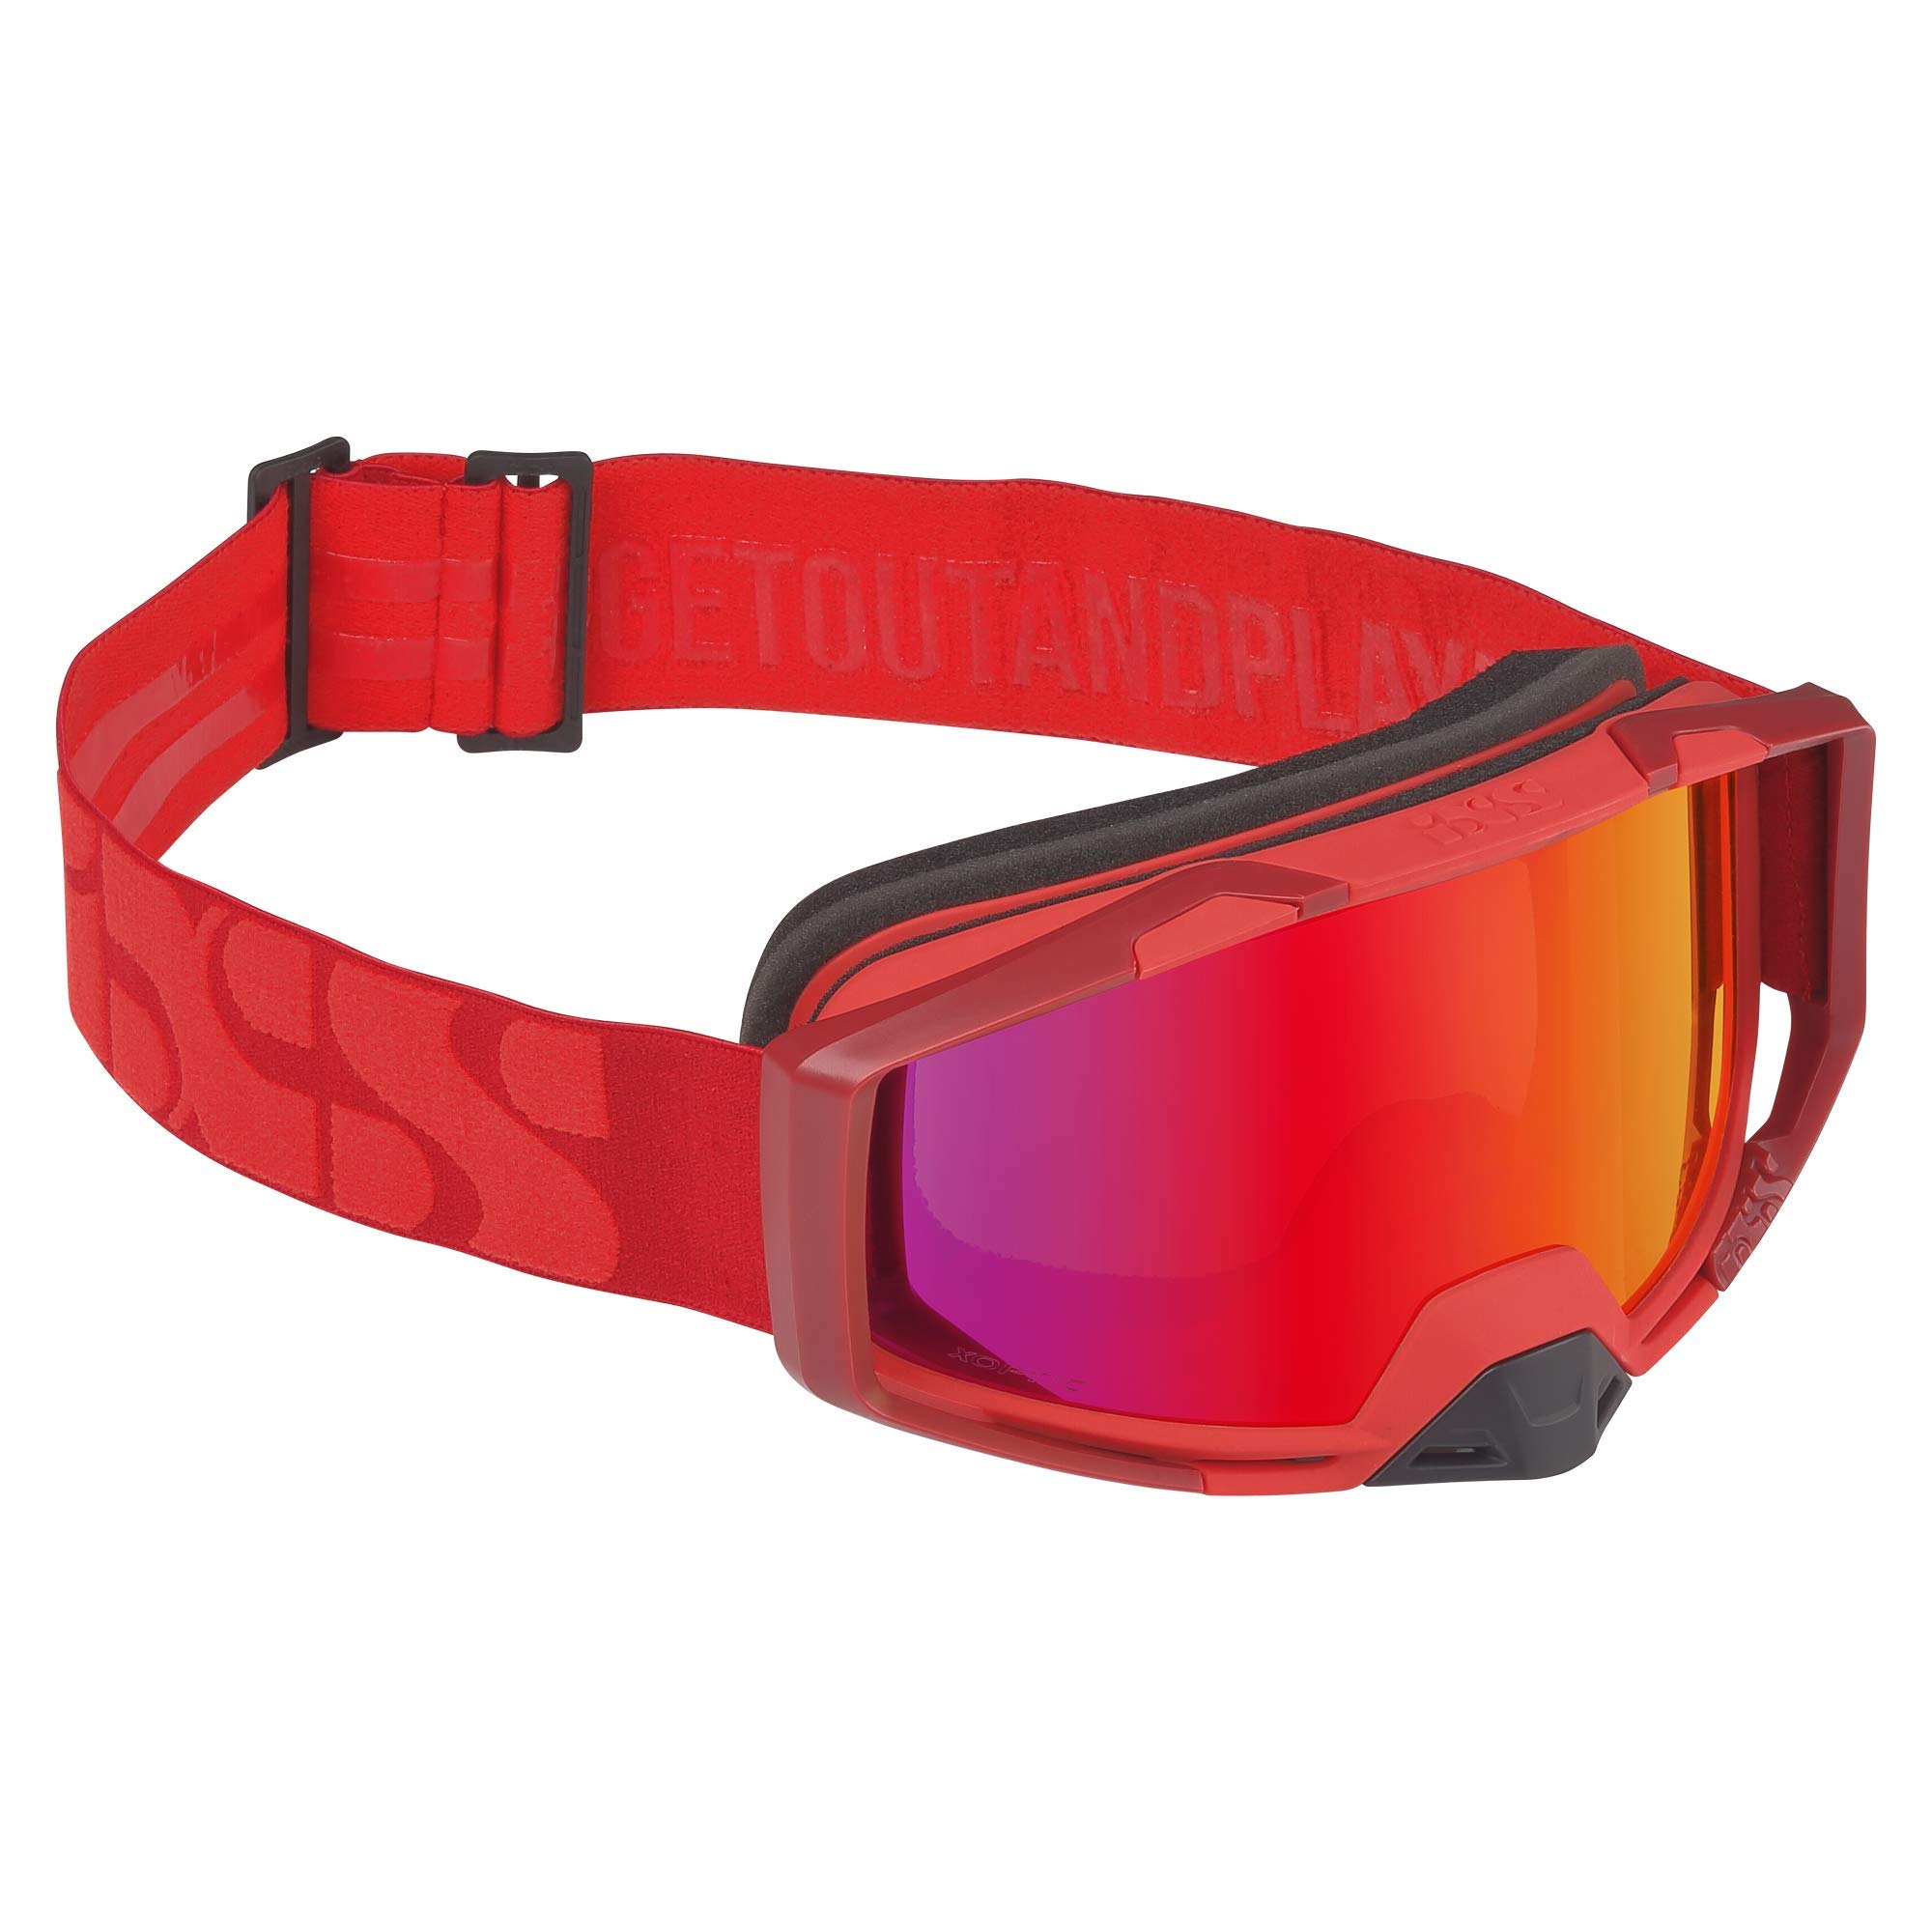 IXS Goggle Trigger Racing Red/Mirror Crimson Brille, rot, Einheitsgröße